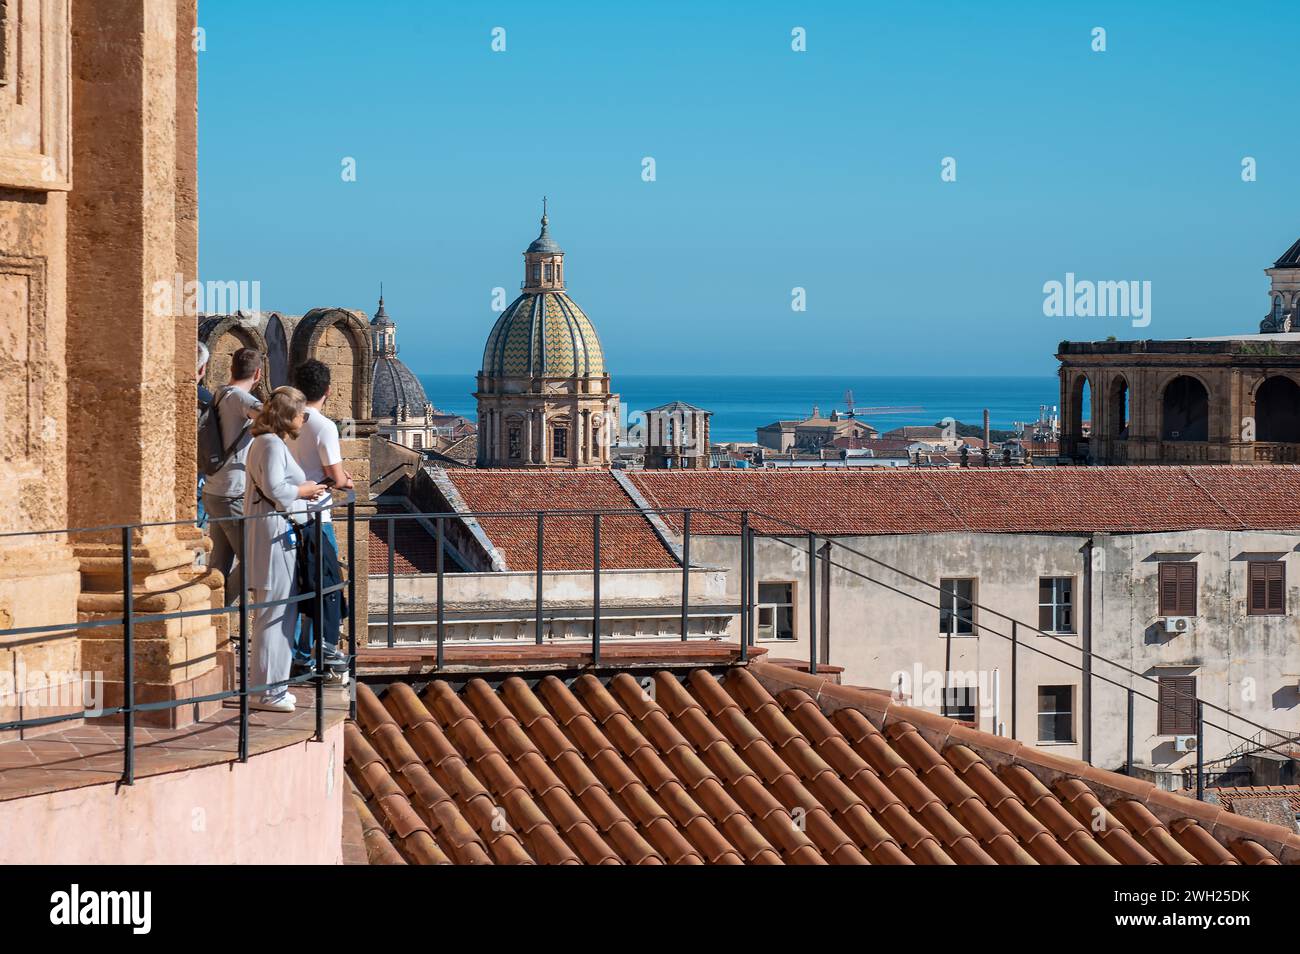 Un groupe de personnes vêtues de vêtements d'été se tient sur un balcon donnant sur la ville animée de palerme, leurs yeux attirés par la majestueuse cathédrale A. Banque D'Images